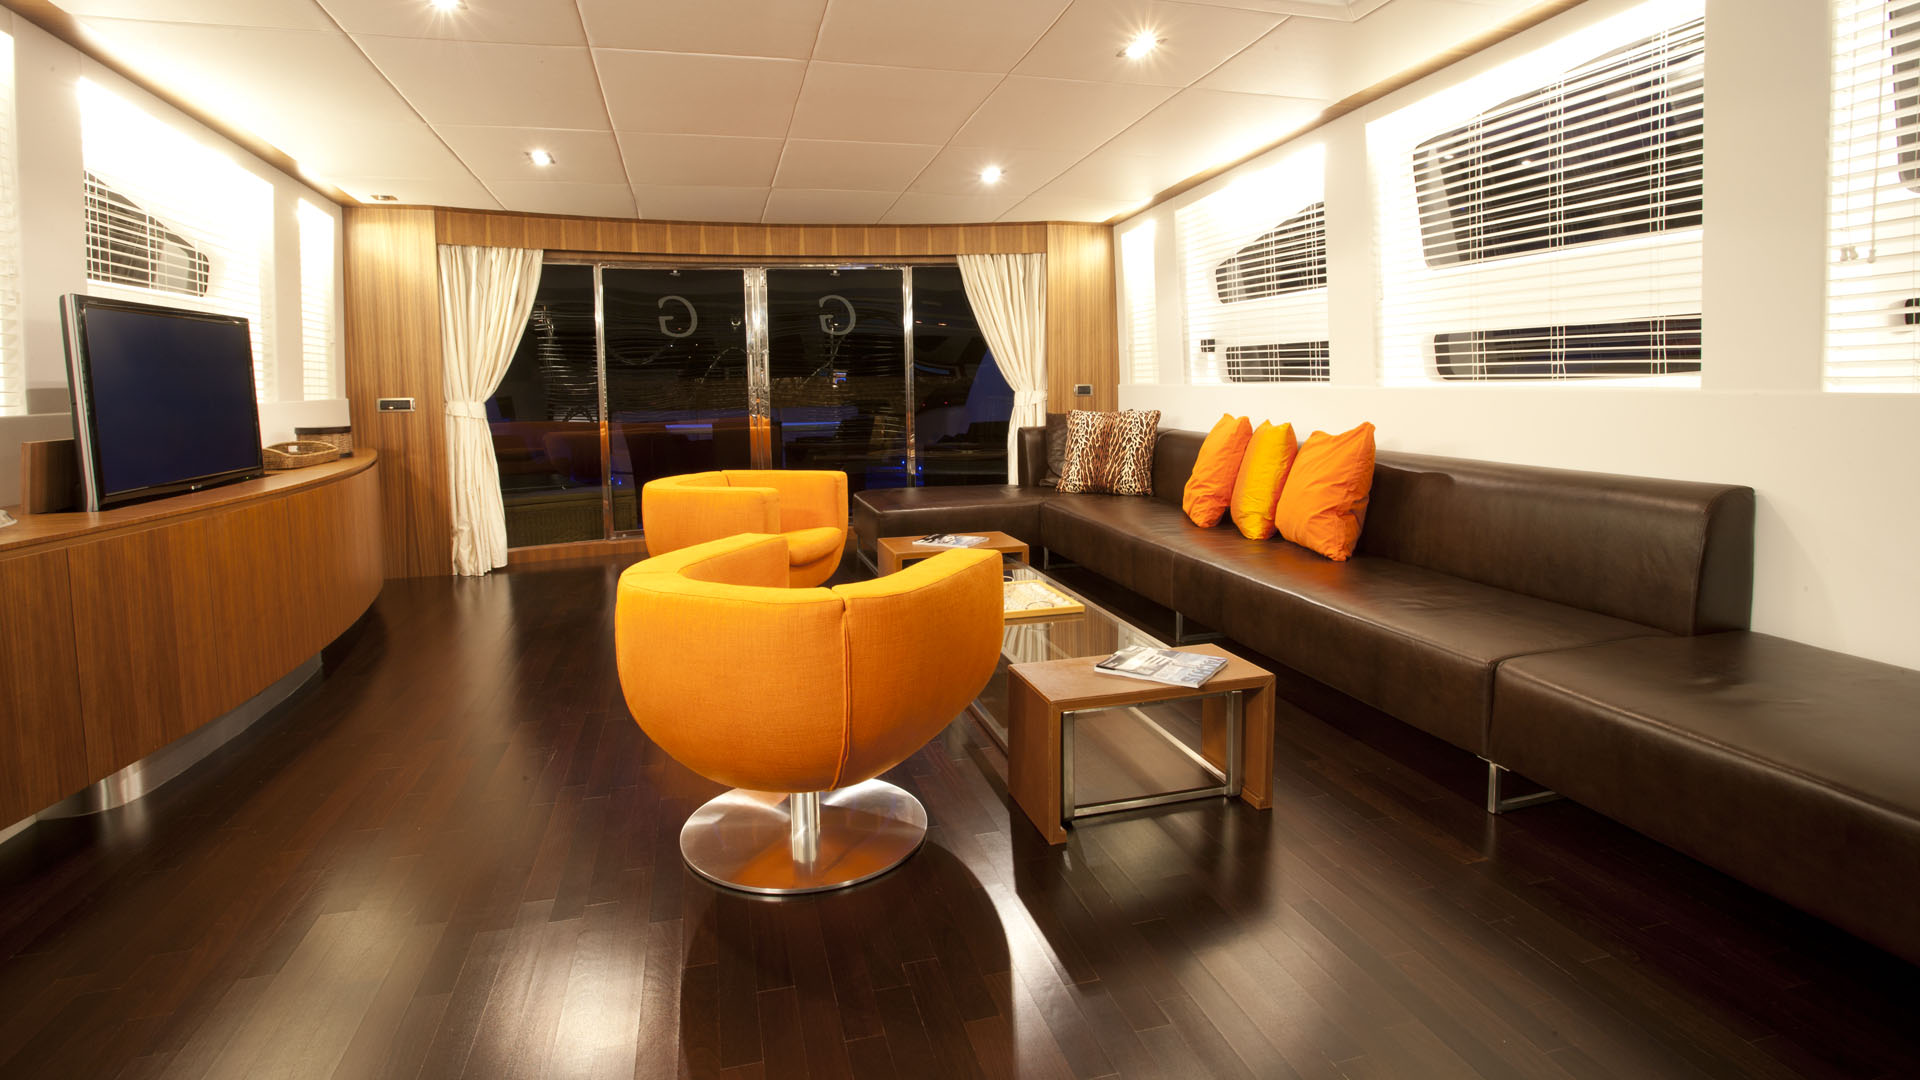 Salon in wood and orange tones